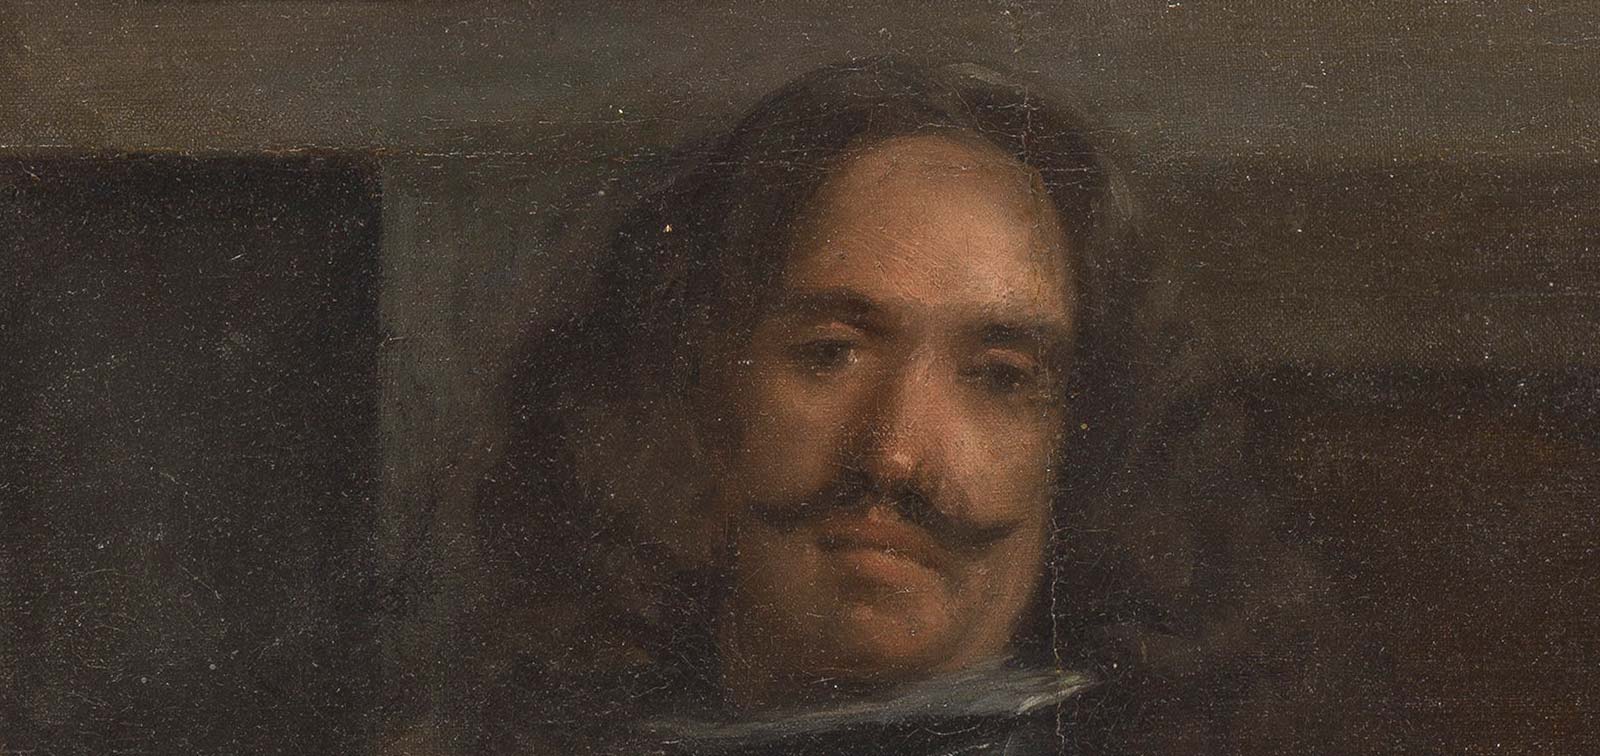 Te quiero en pintura: retratos con emoción. Parada III. Velázquez